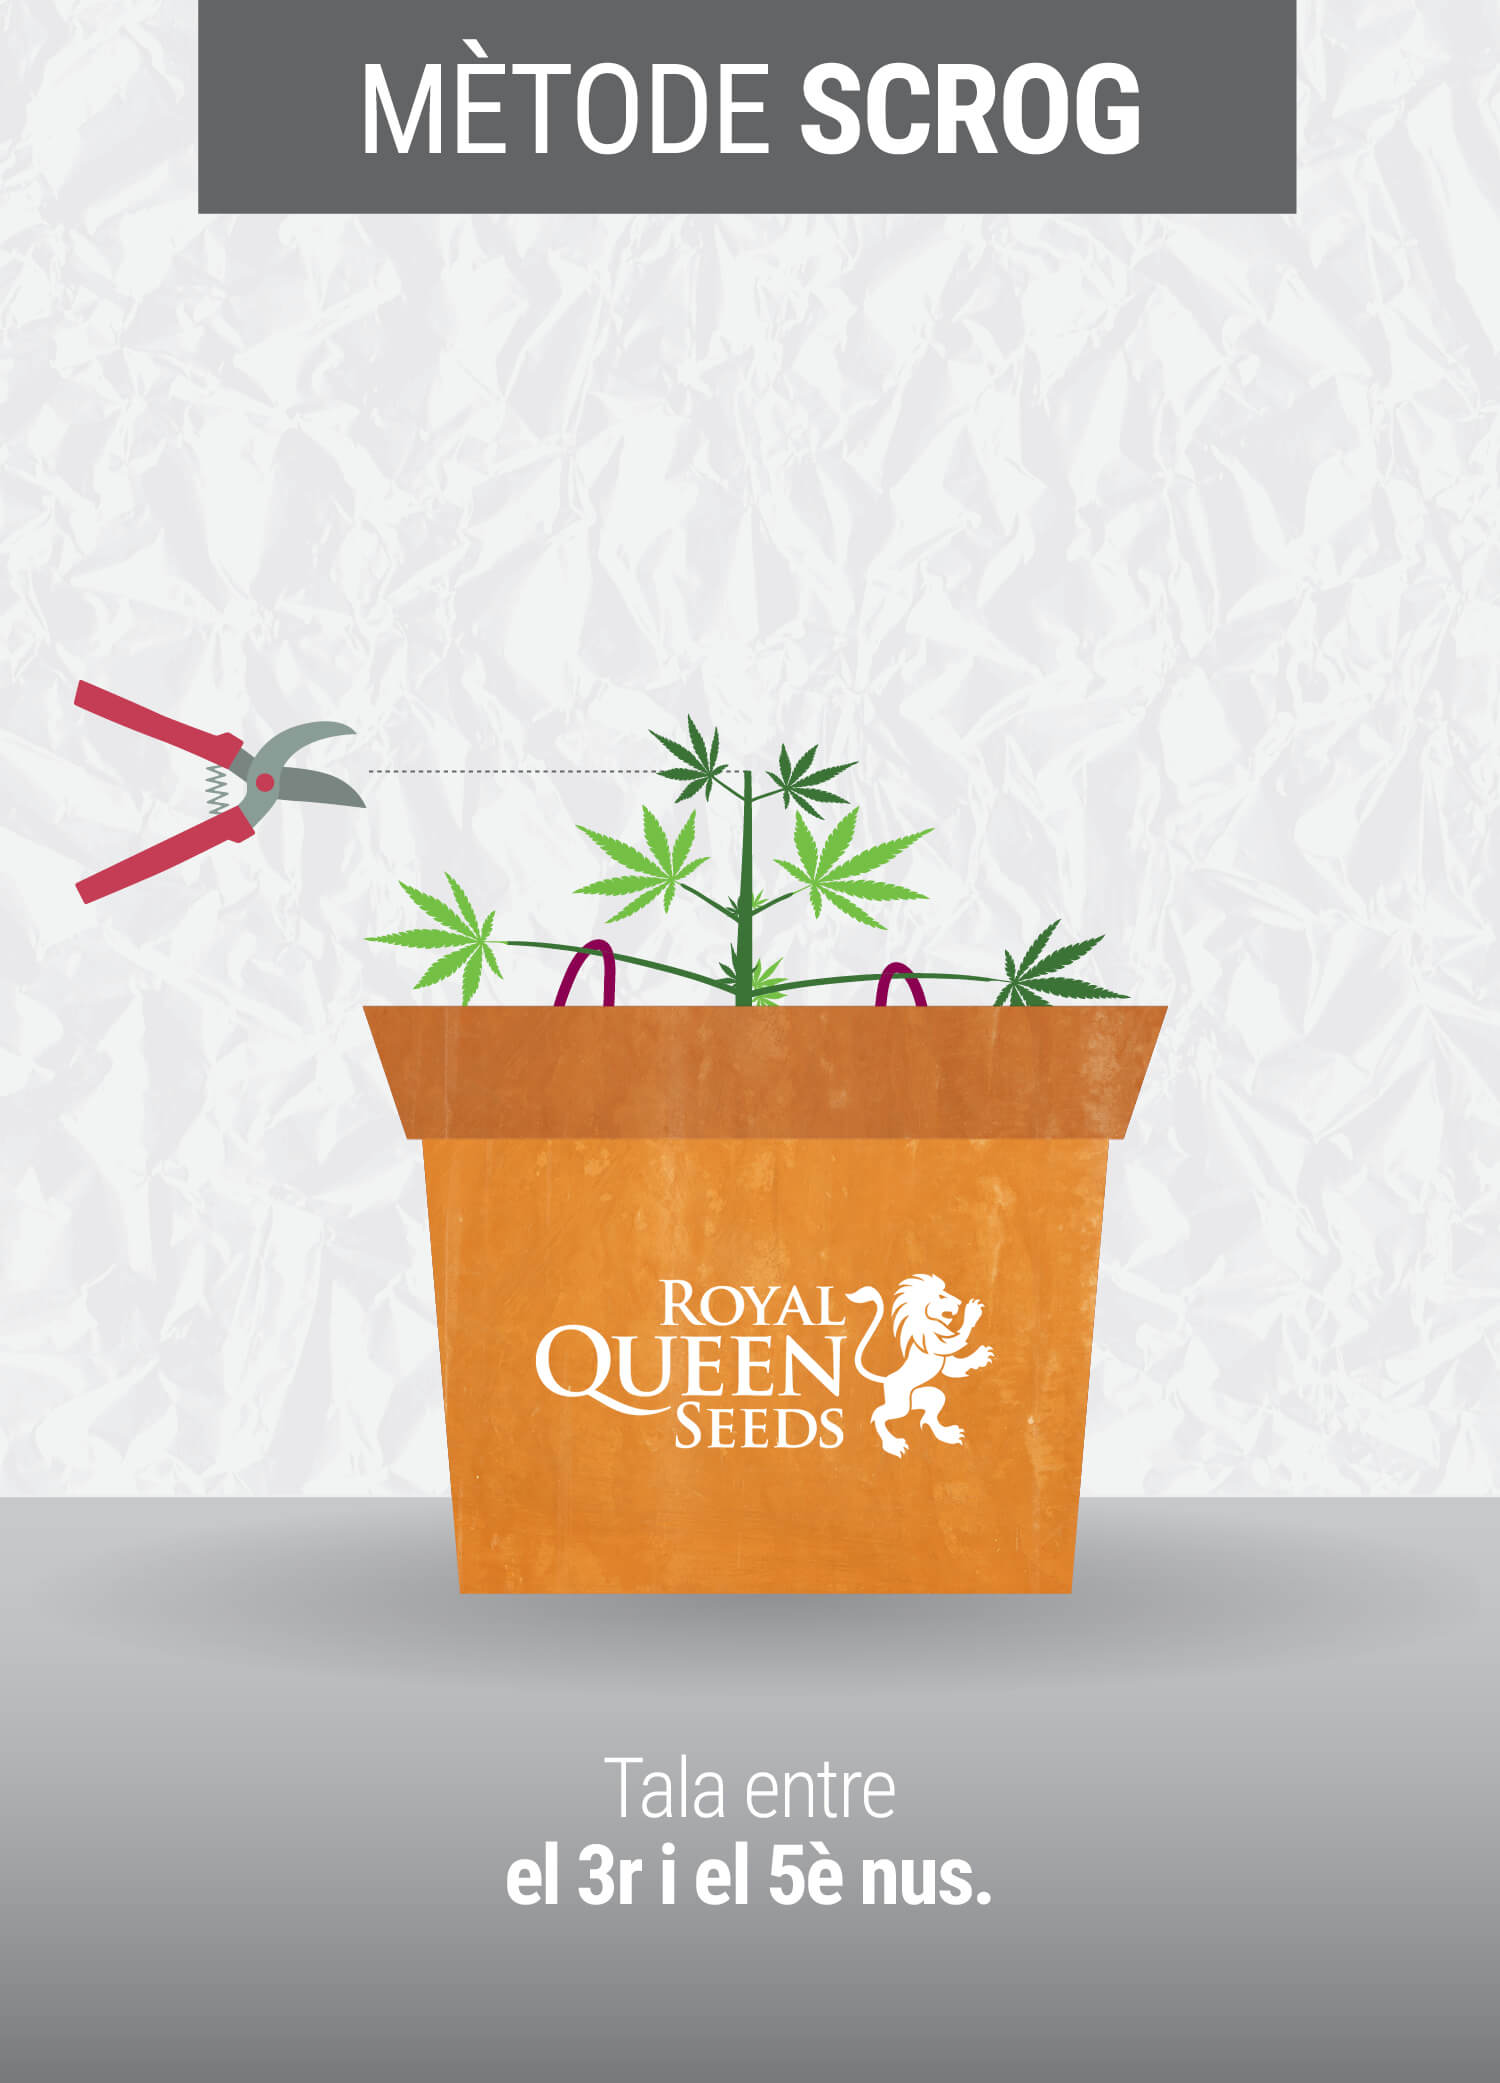 Cultivant cannabis amb el mètodo SCROG (Screen of Green)